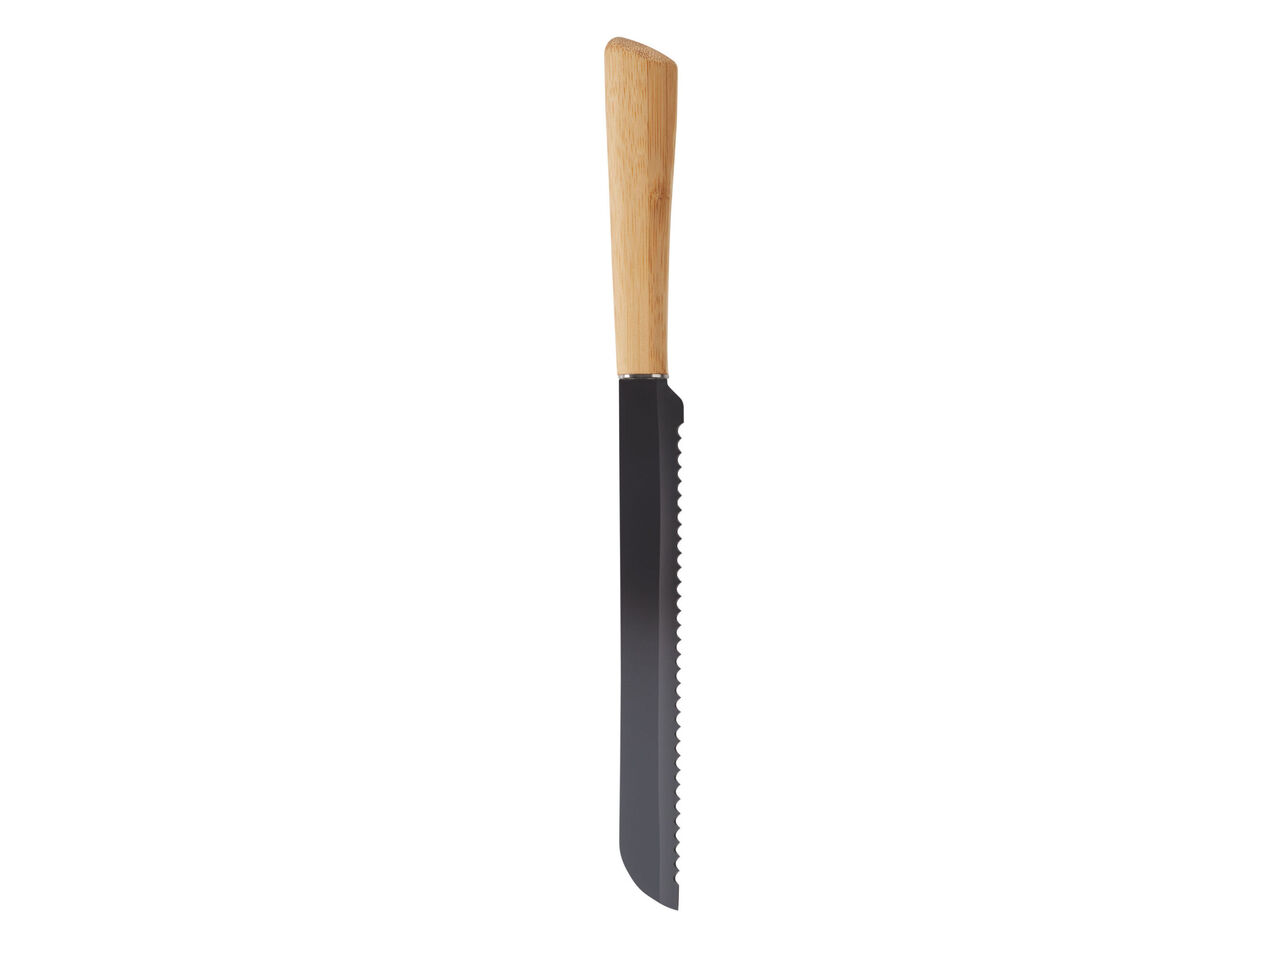 ERNESTO® Nóż lub zestaw noży , cena 19,99 PLN 
 
- dł. ostrza: 20 cm, 17,5 ...